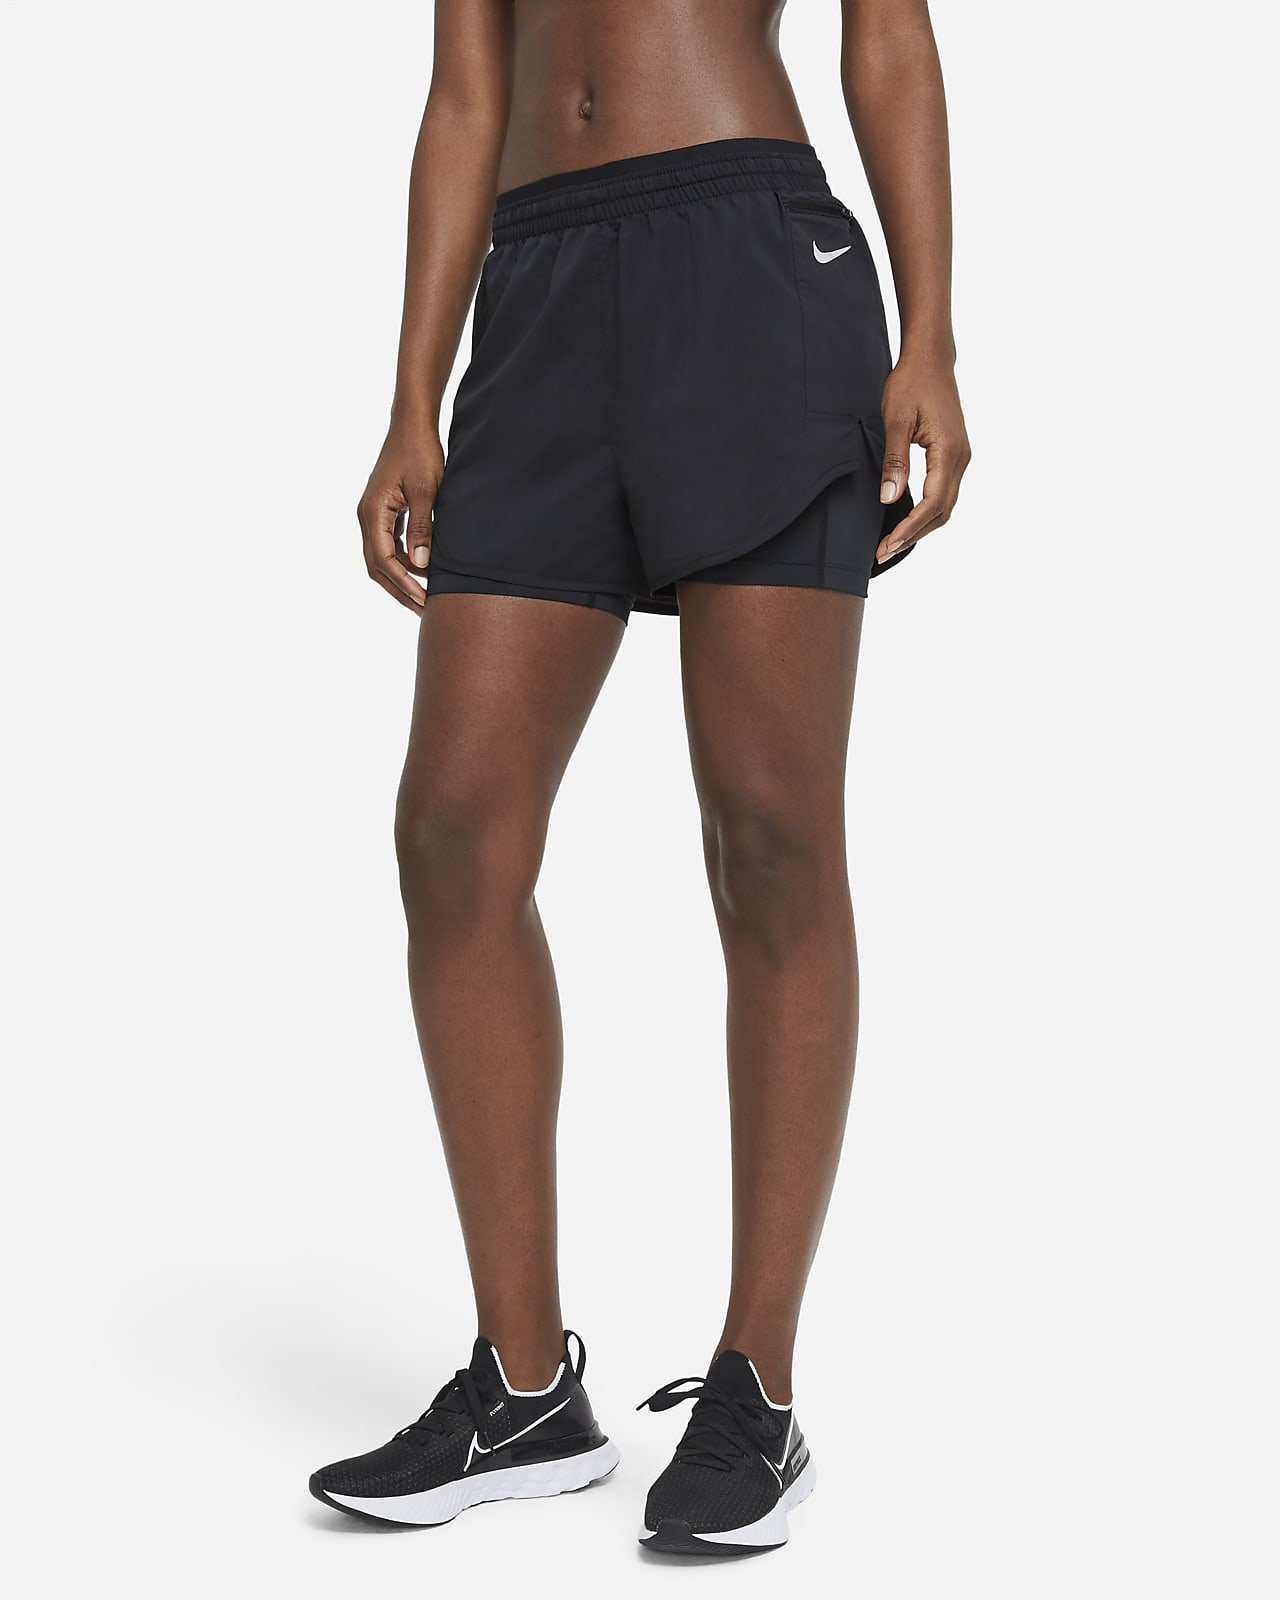 Shorts de running 2 en 1 para mujer Nike Tempo Luxe